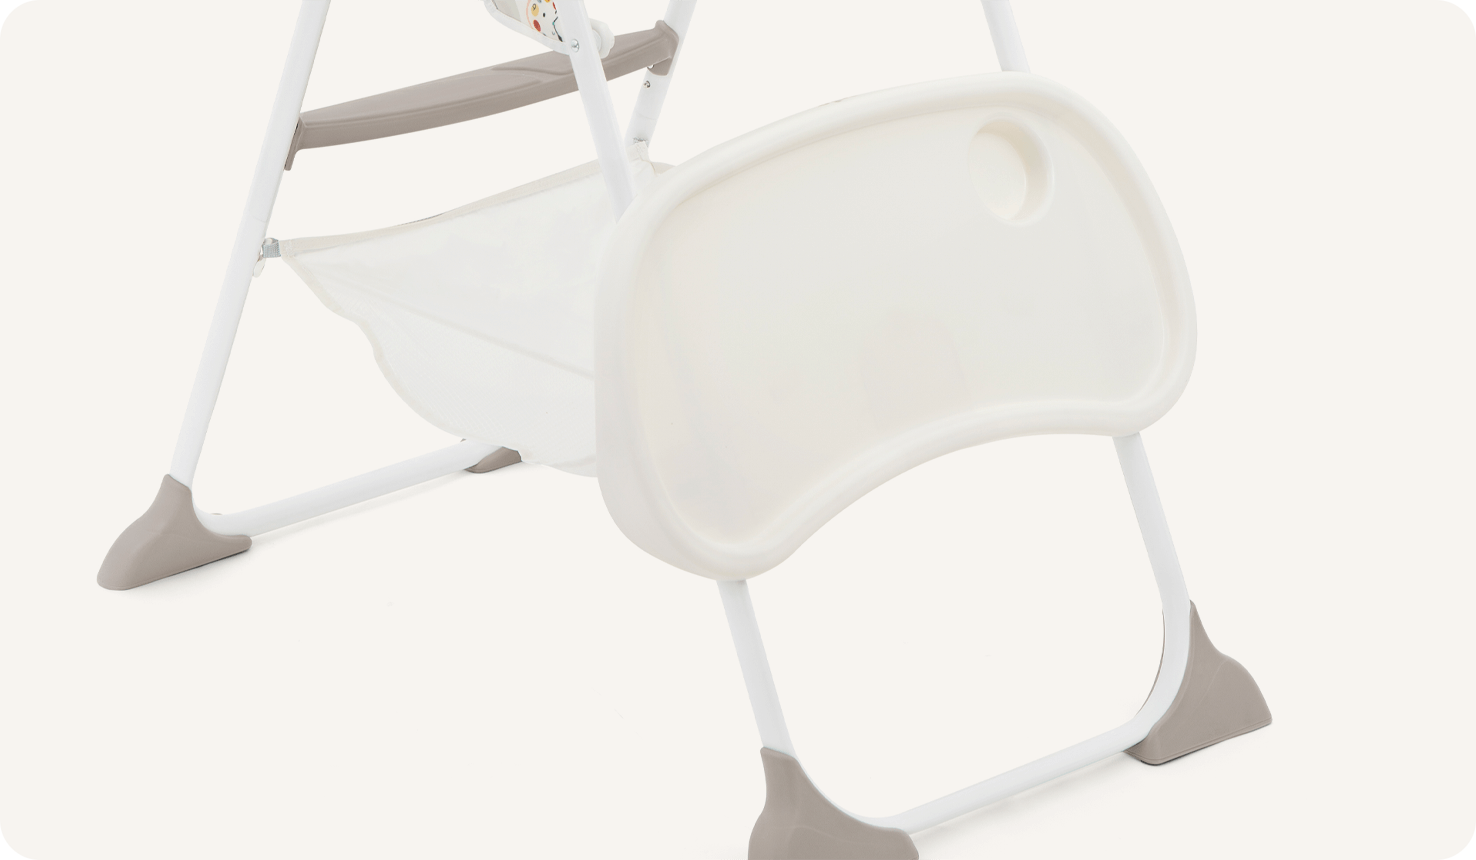  La chaise haute Joie mimzy snacker déclinée dans un imprimé multicolore représentant des cadrans d’horloge, animaux et formes géométriques de dessin animé, avec illustration du rangement du plateau sur les pieds arrière.